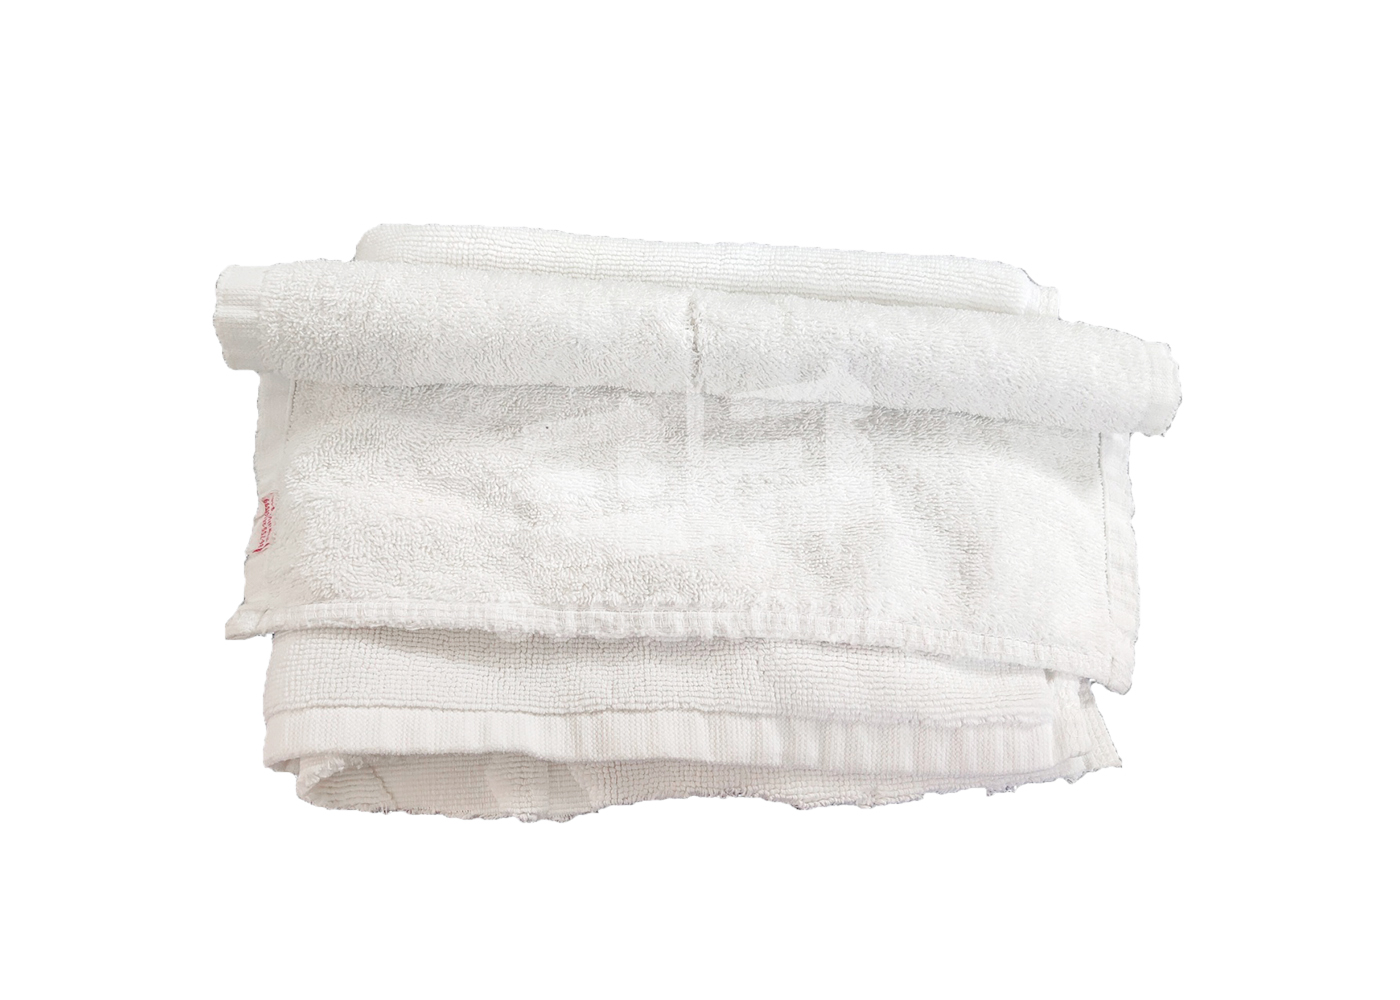 白色毛巾类抹布 - 白色裁剪浴巾混合